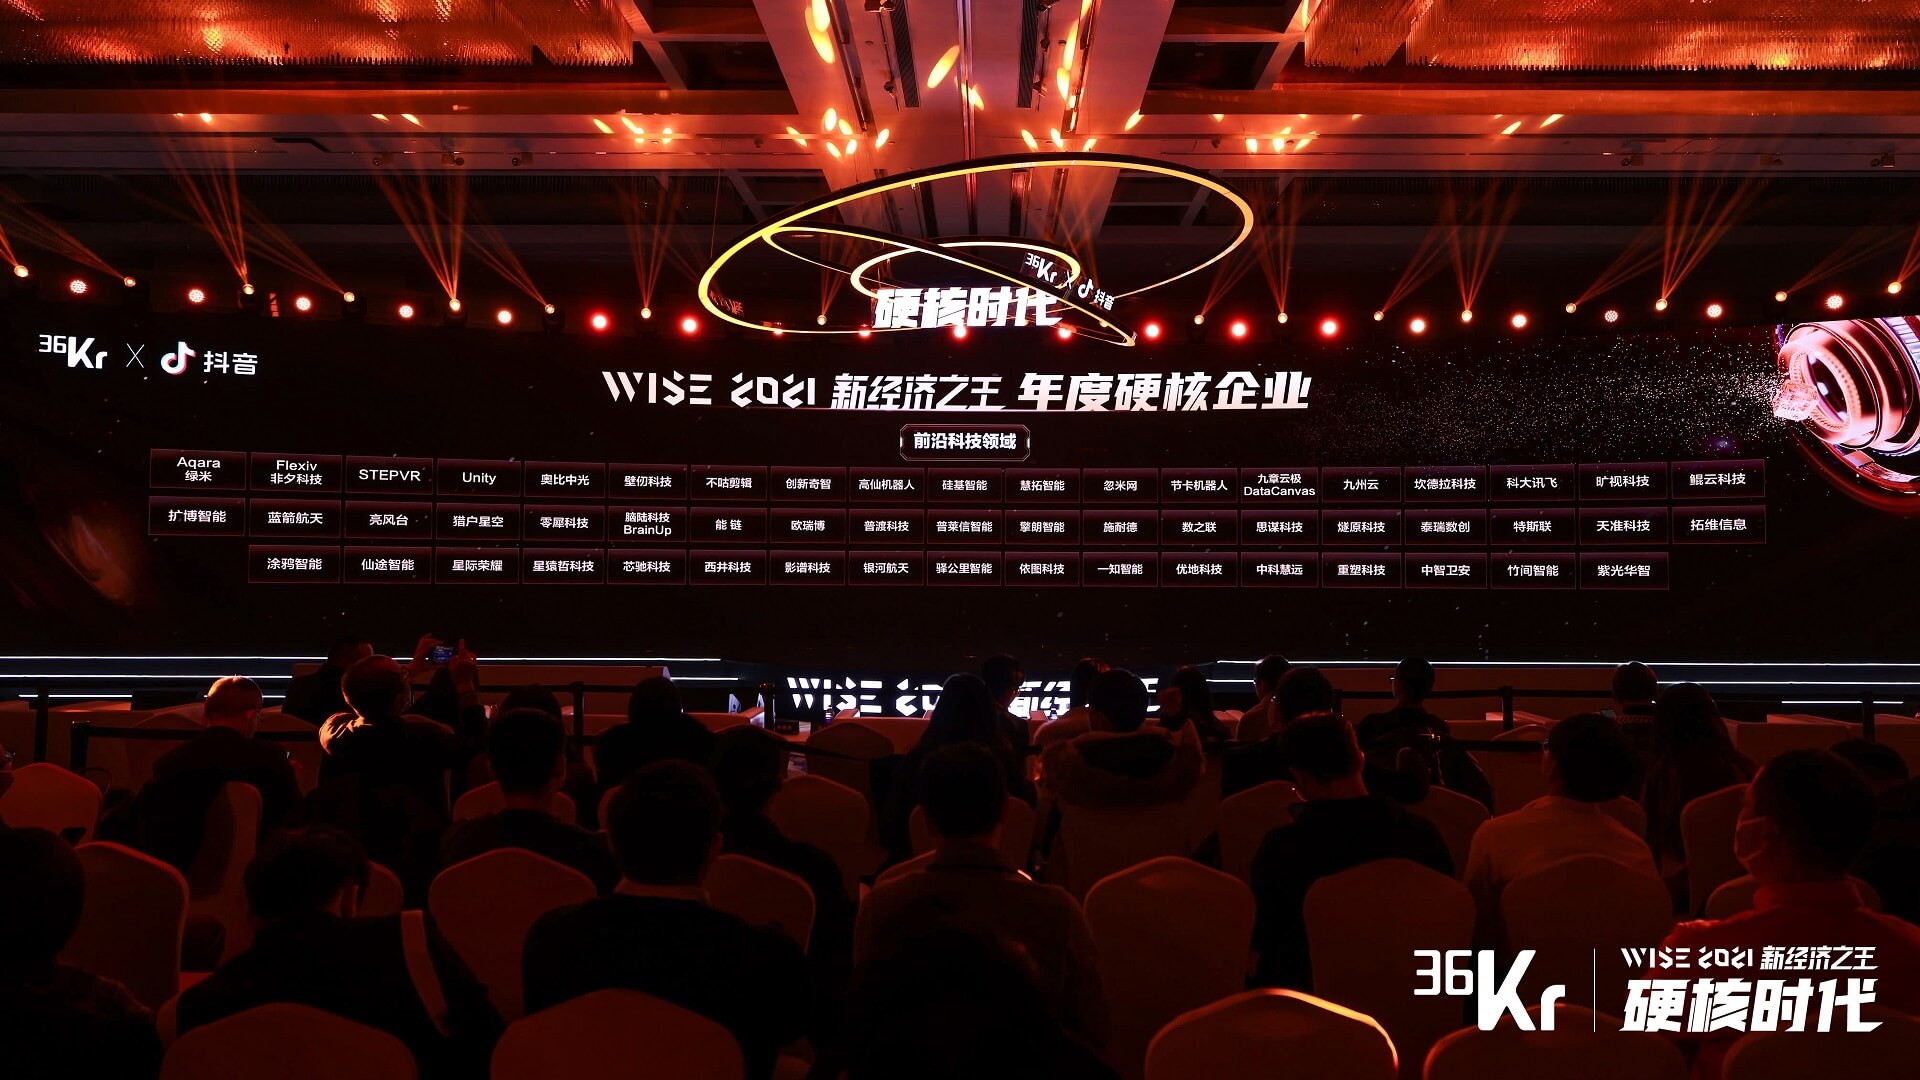 WISE 2021新经济之王 年度硬核企业